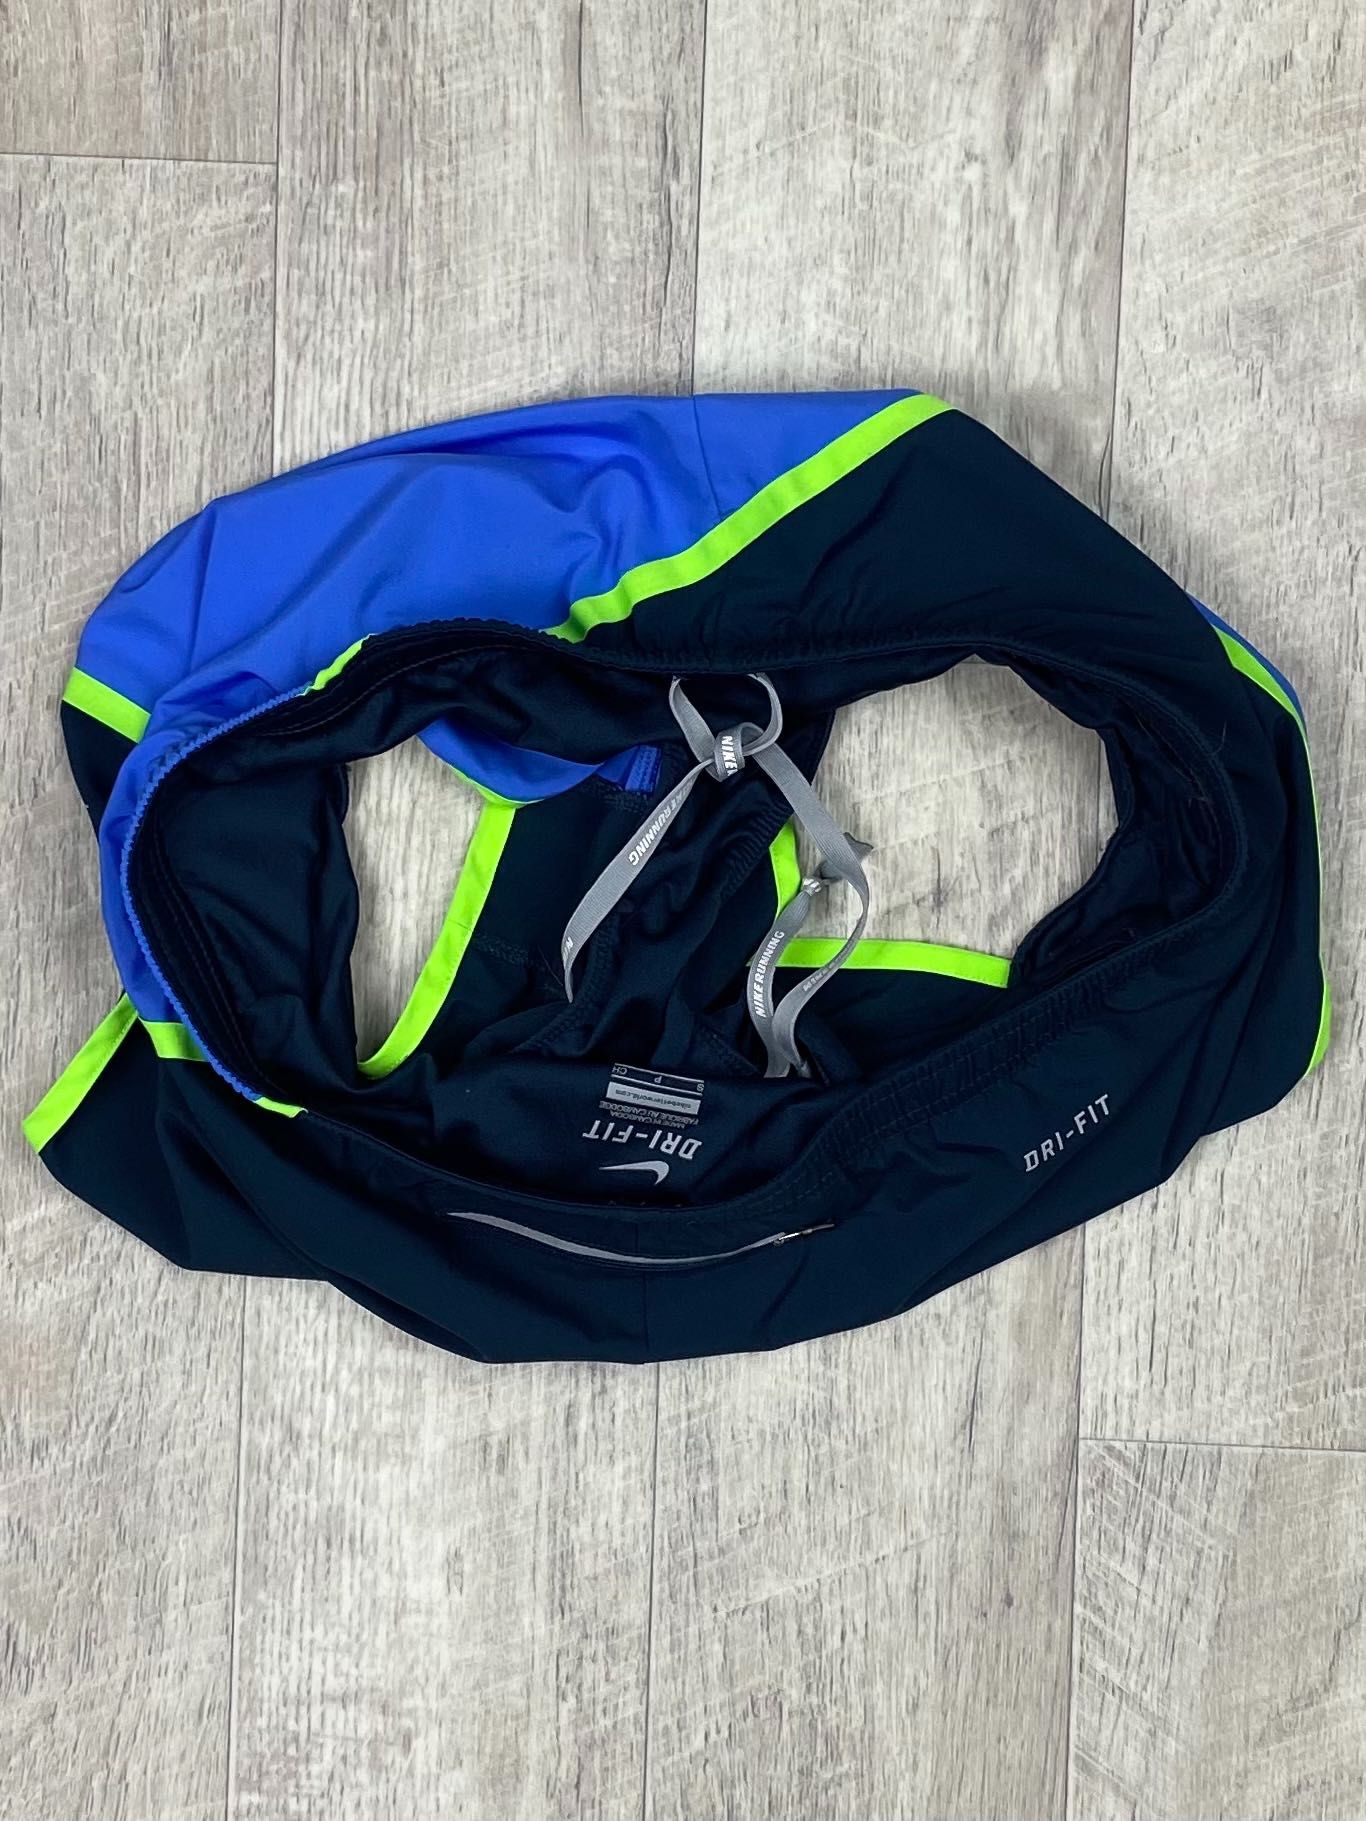 Nike dri-fit шорты S размер женские спортивные оригинал